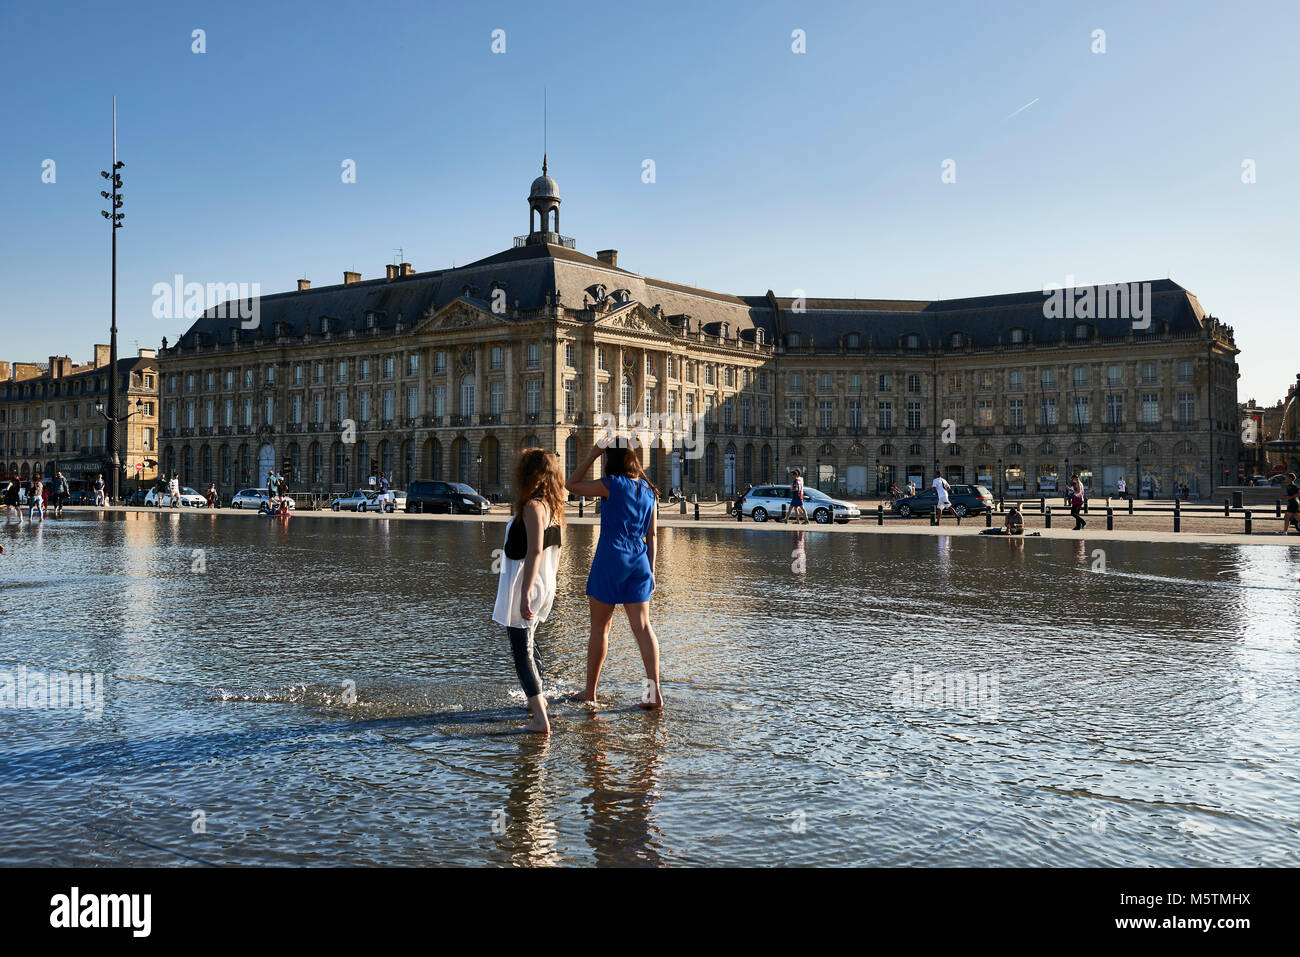 La fontana a specchio di fronte a Place de la Bourse di Bordeaux, Francia Foto Stock